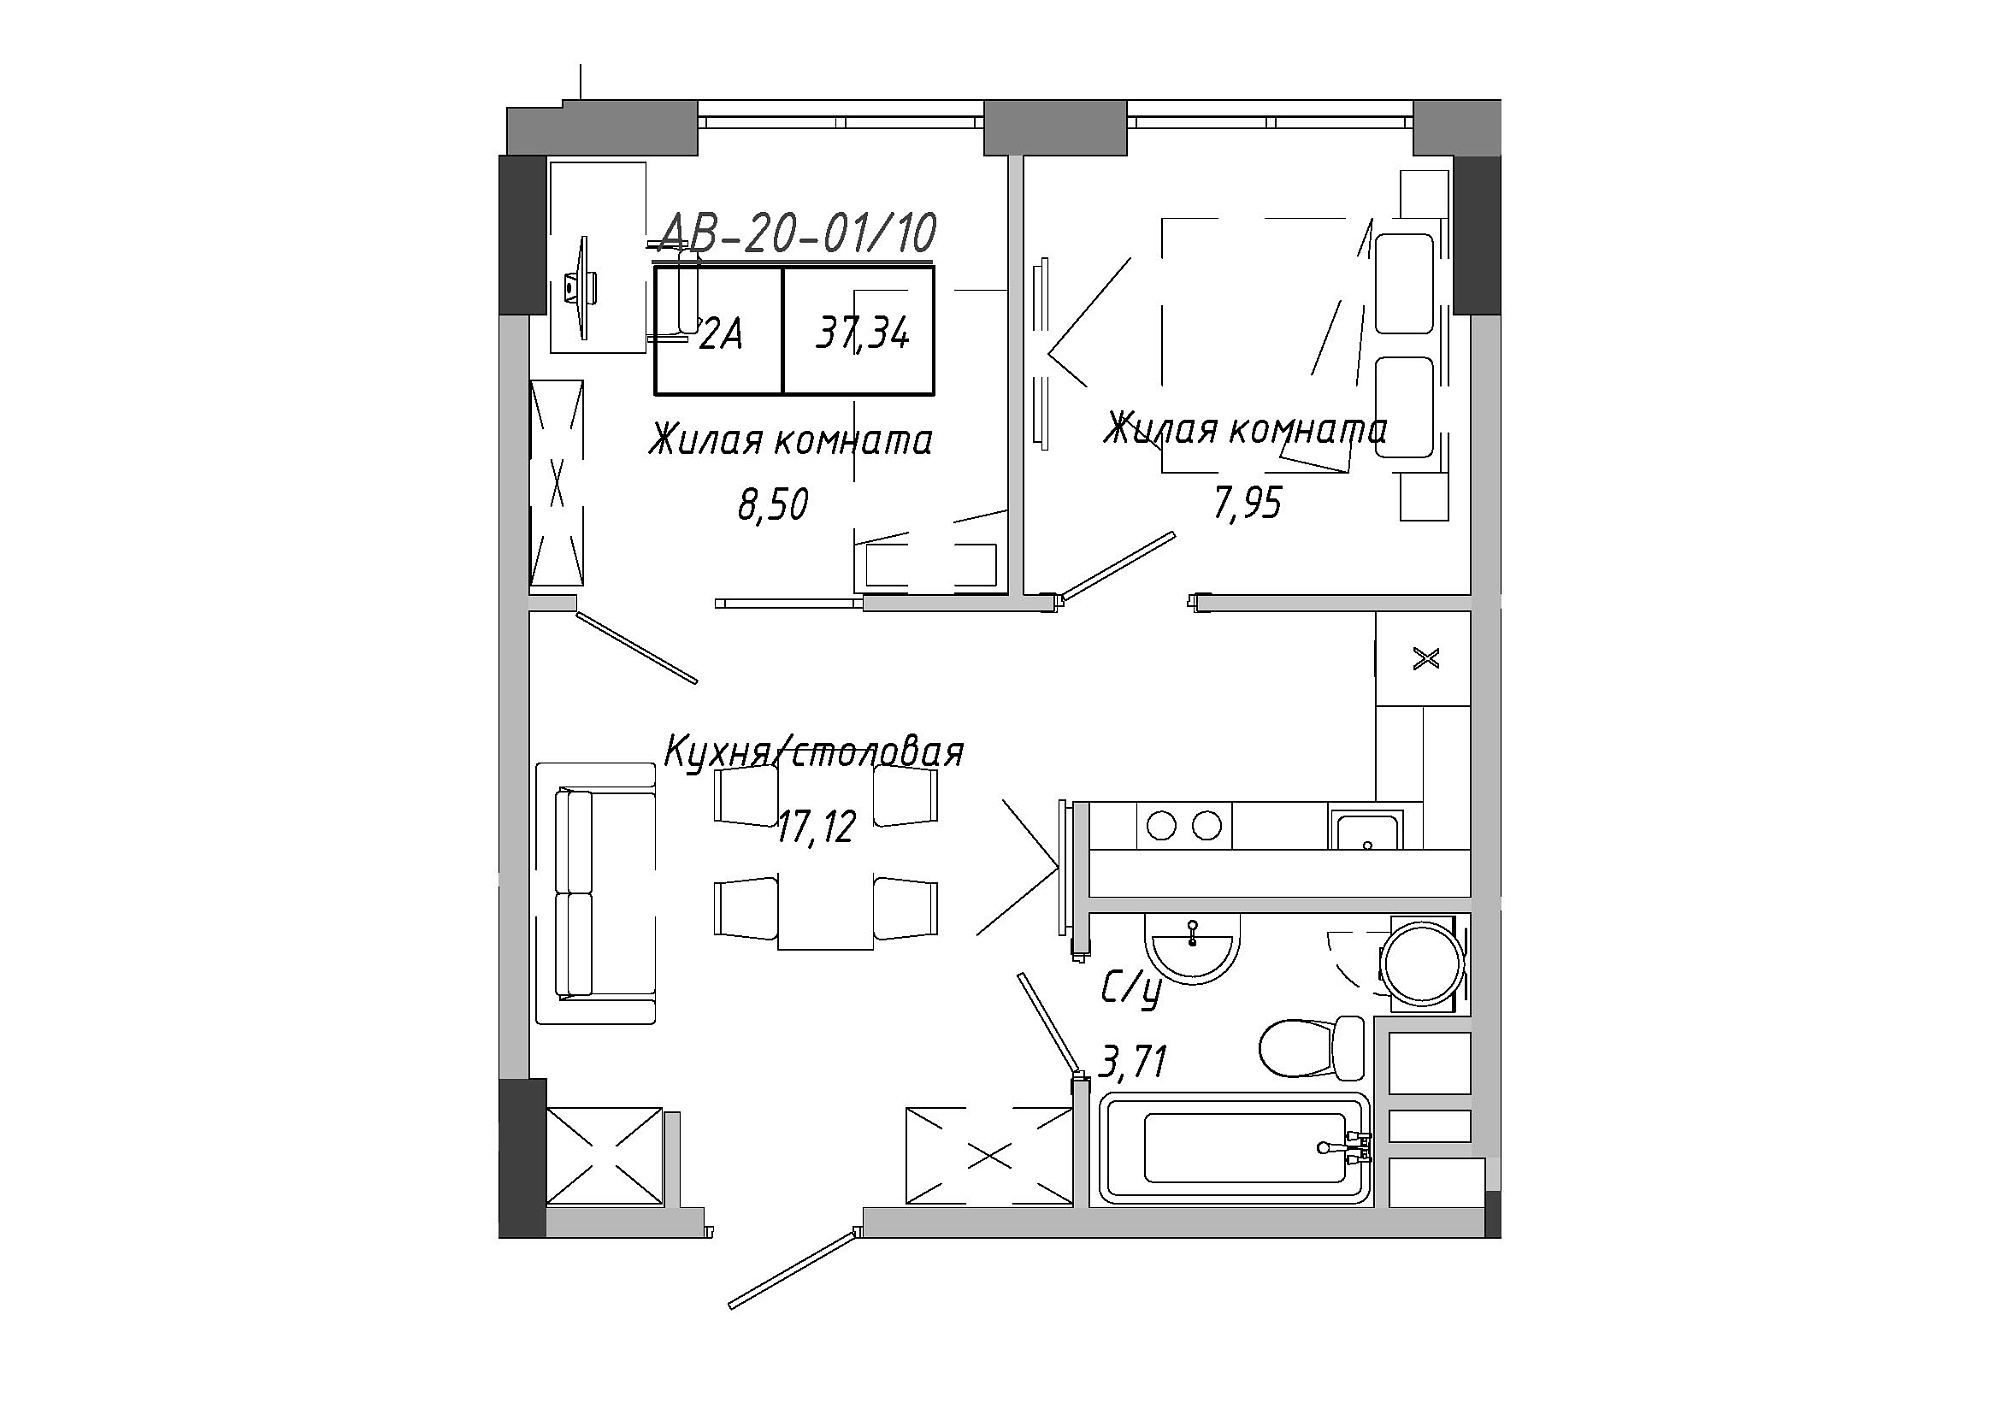 Планировка 2-к квартира площей 37.34м2, AB-20-01/00010.